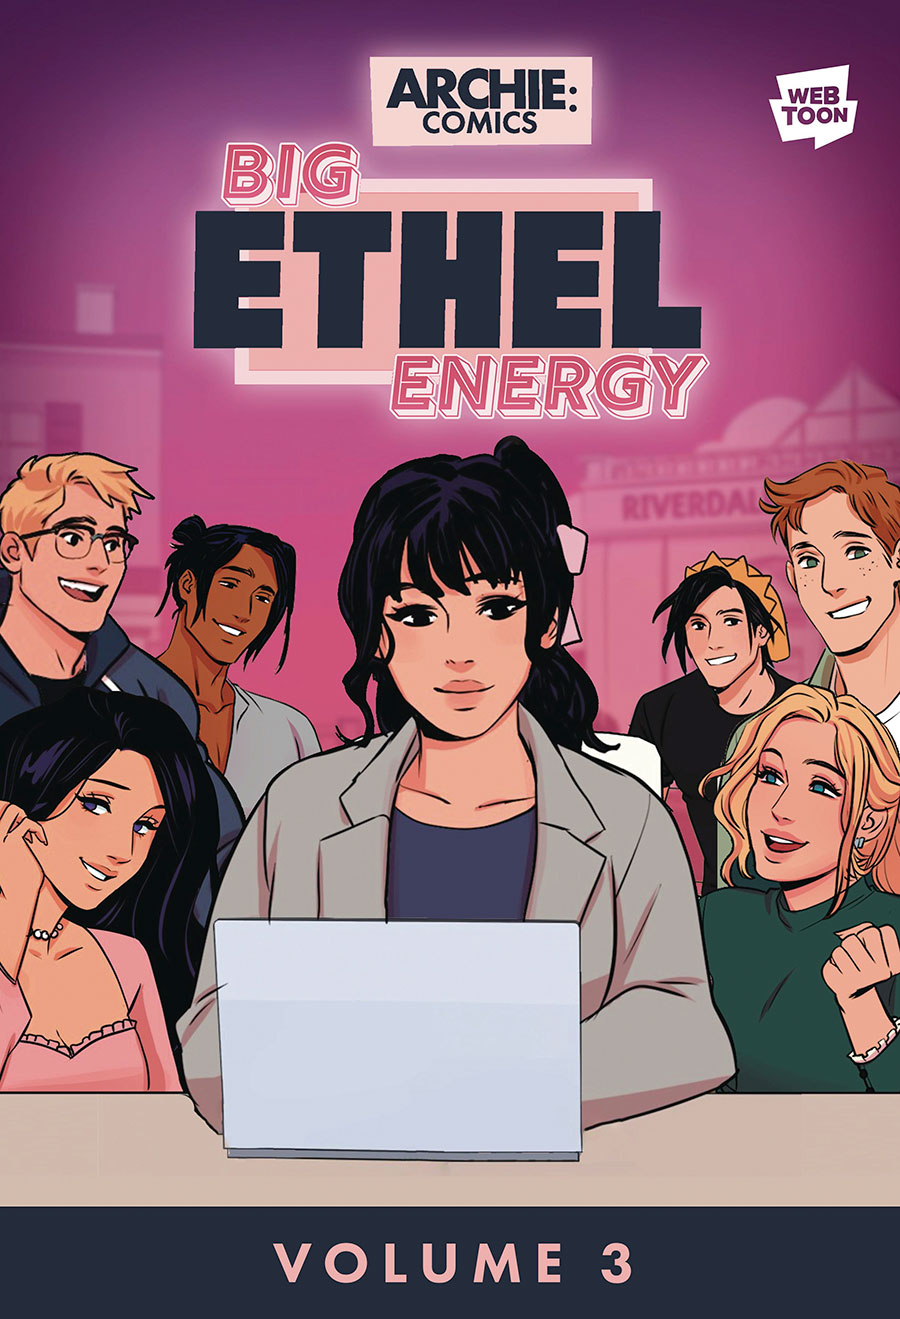 Big Ethel Energy Vol 3 TP